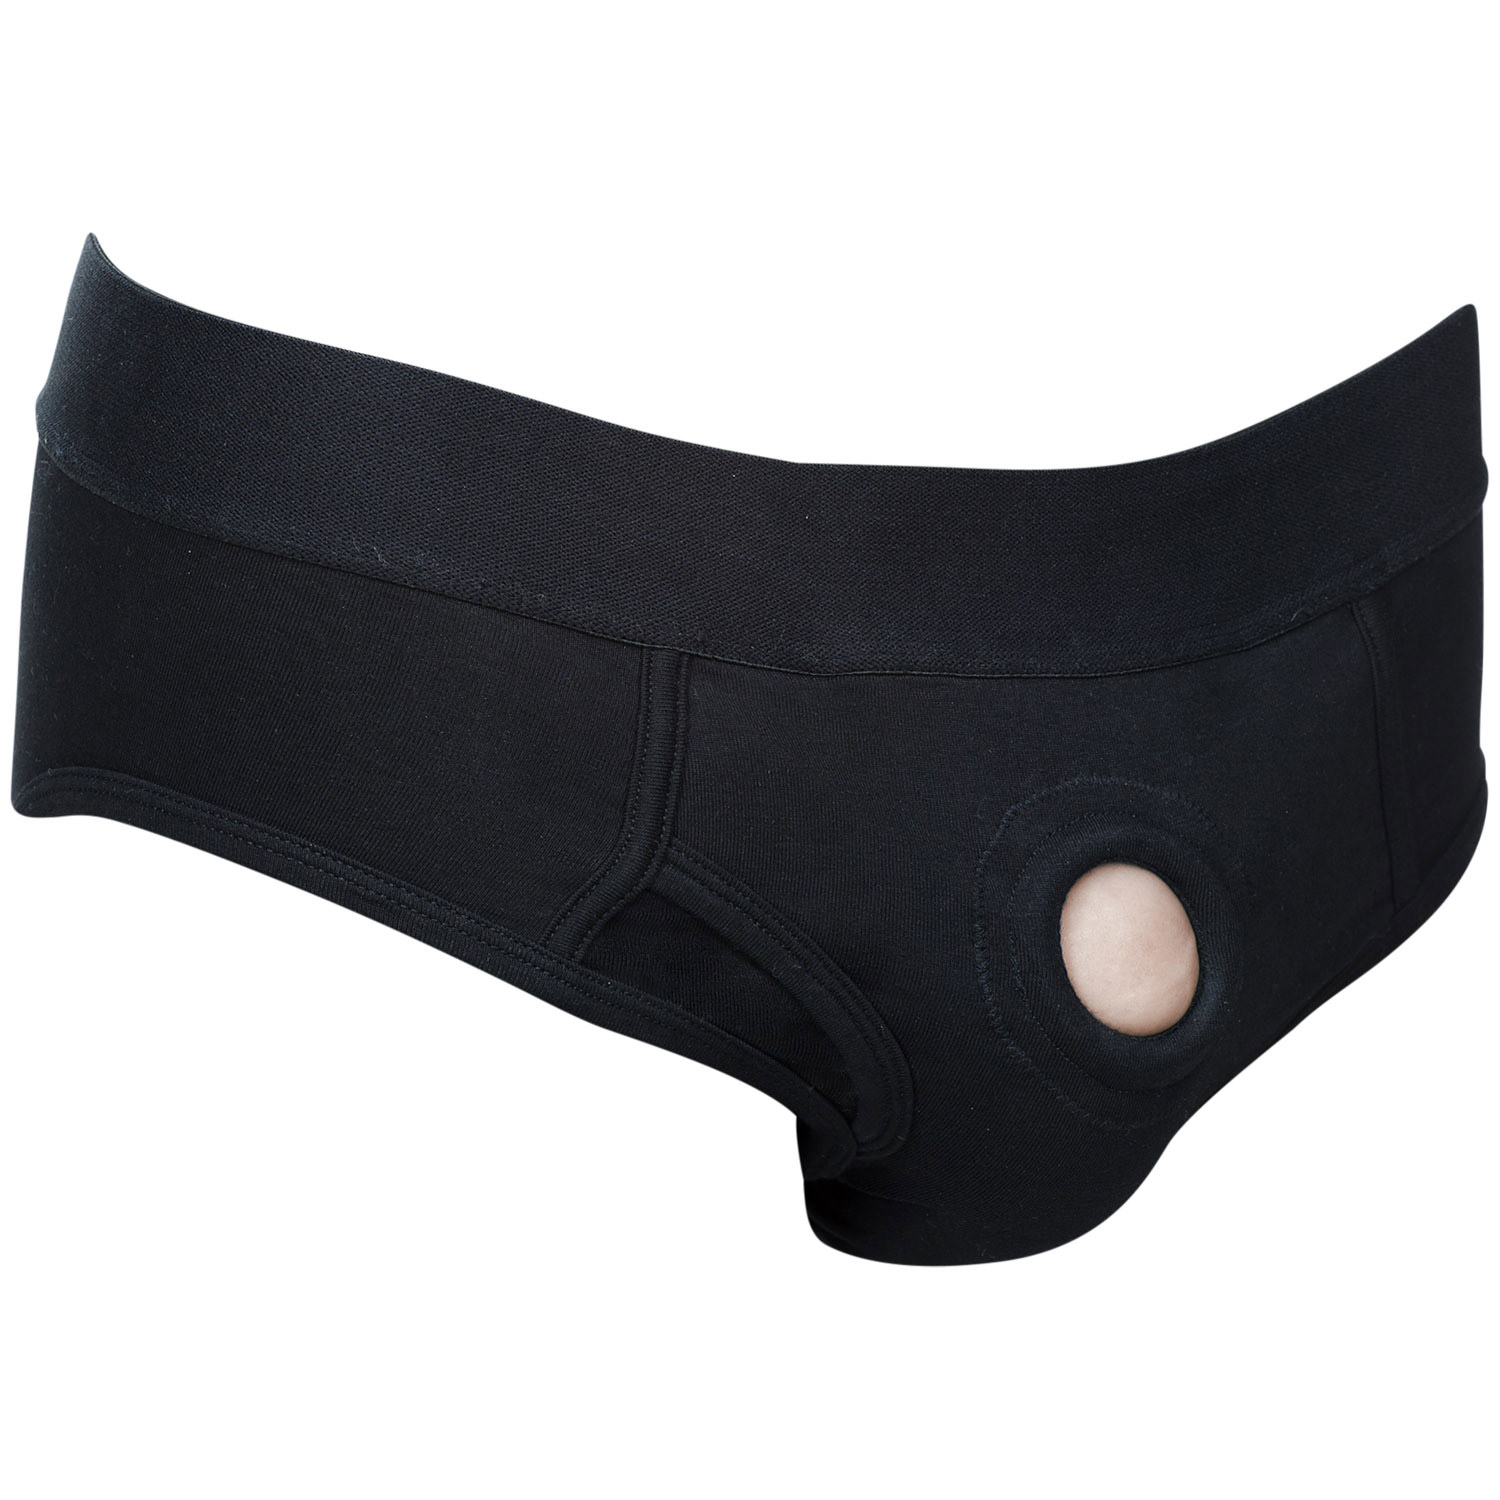 Calexotics Packer Gear Brief Harness - Svart - L | Favoriter//REA för kvinnor//Par//REA för Par//Strap-on//Strap-on Dildo//REA//Vibrerande Strap-on//Seledildos//Par Sexleksaker//Harness//CalExotics | Intimast